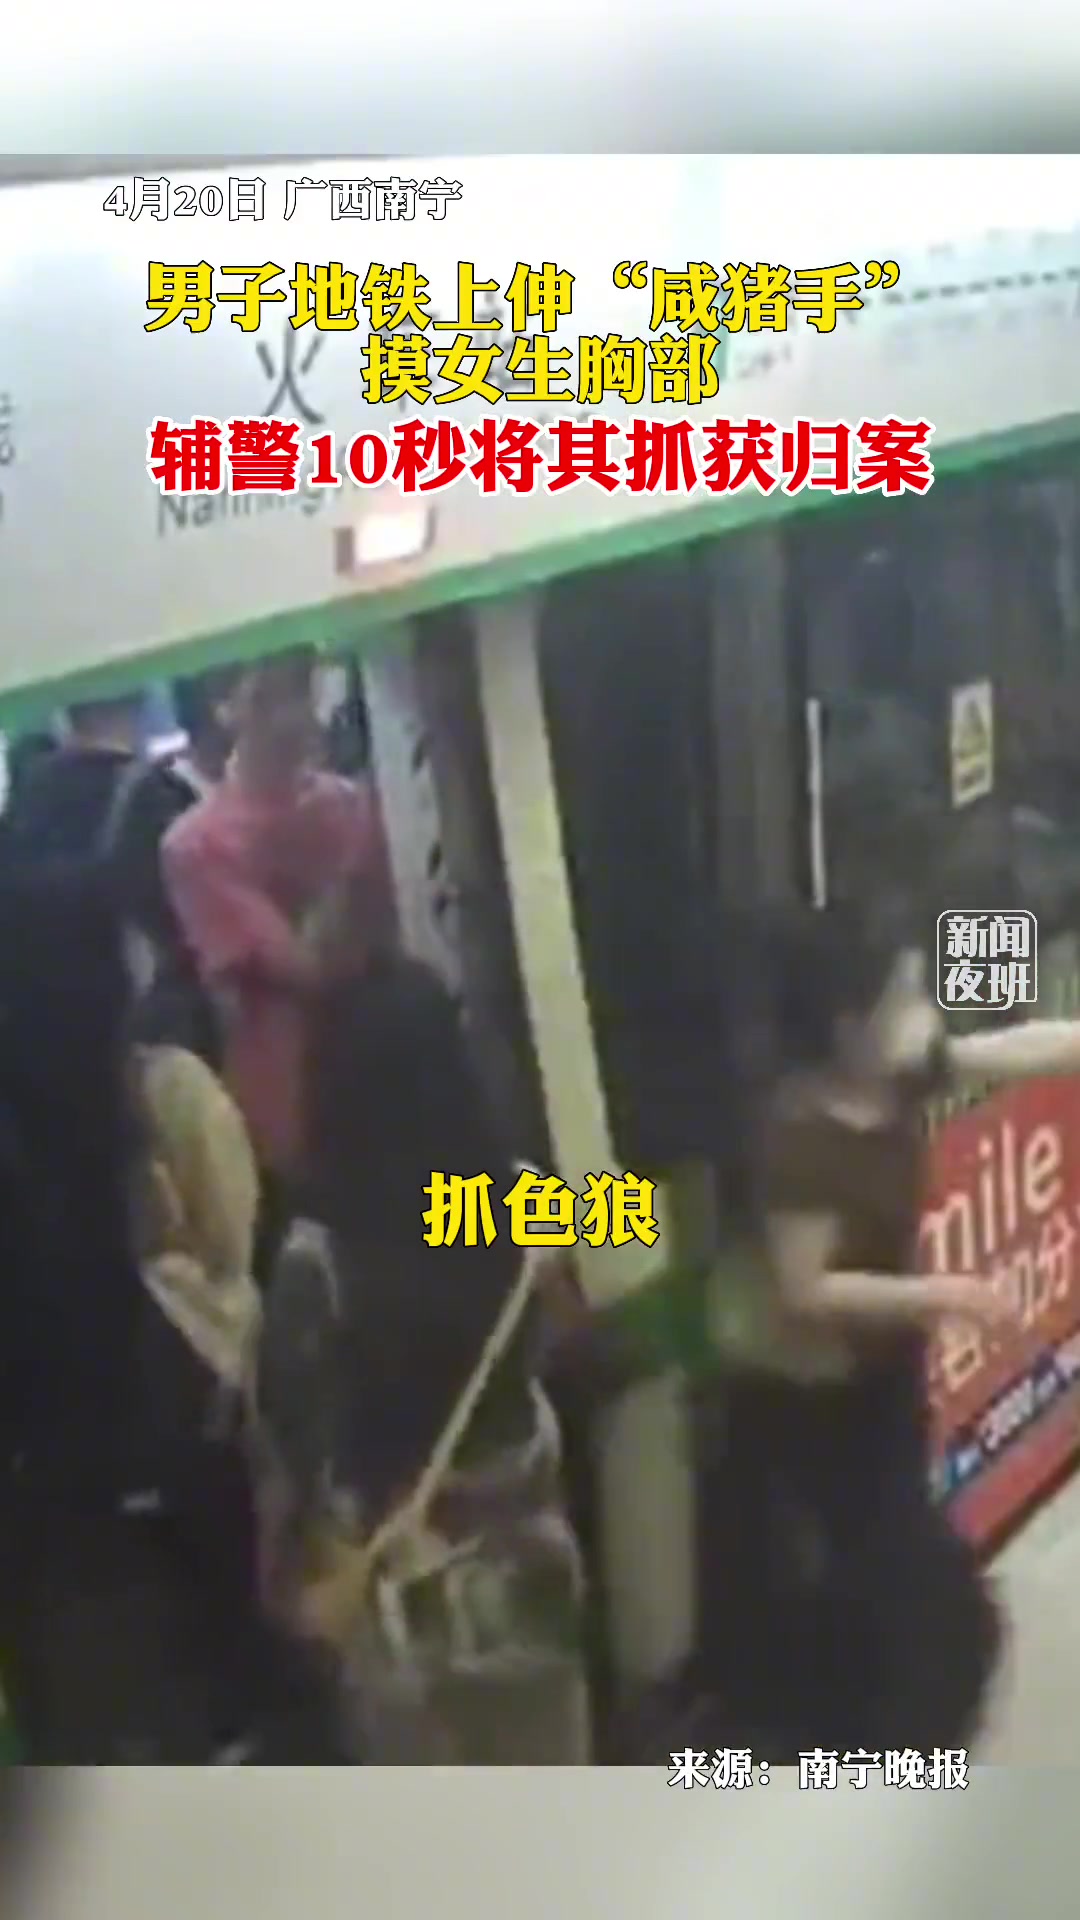 武汉现“地铁丐帮” 乞讨女孩对男乘客摸胸搂腰_社会_环球网